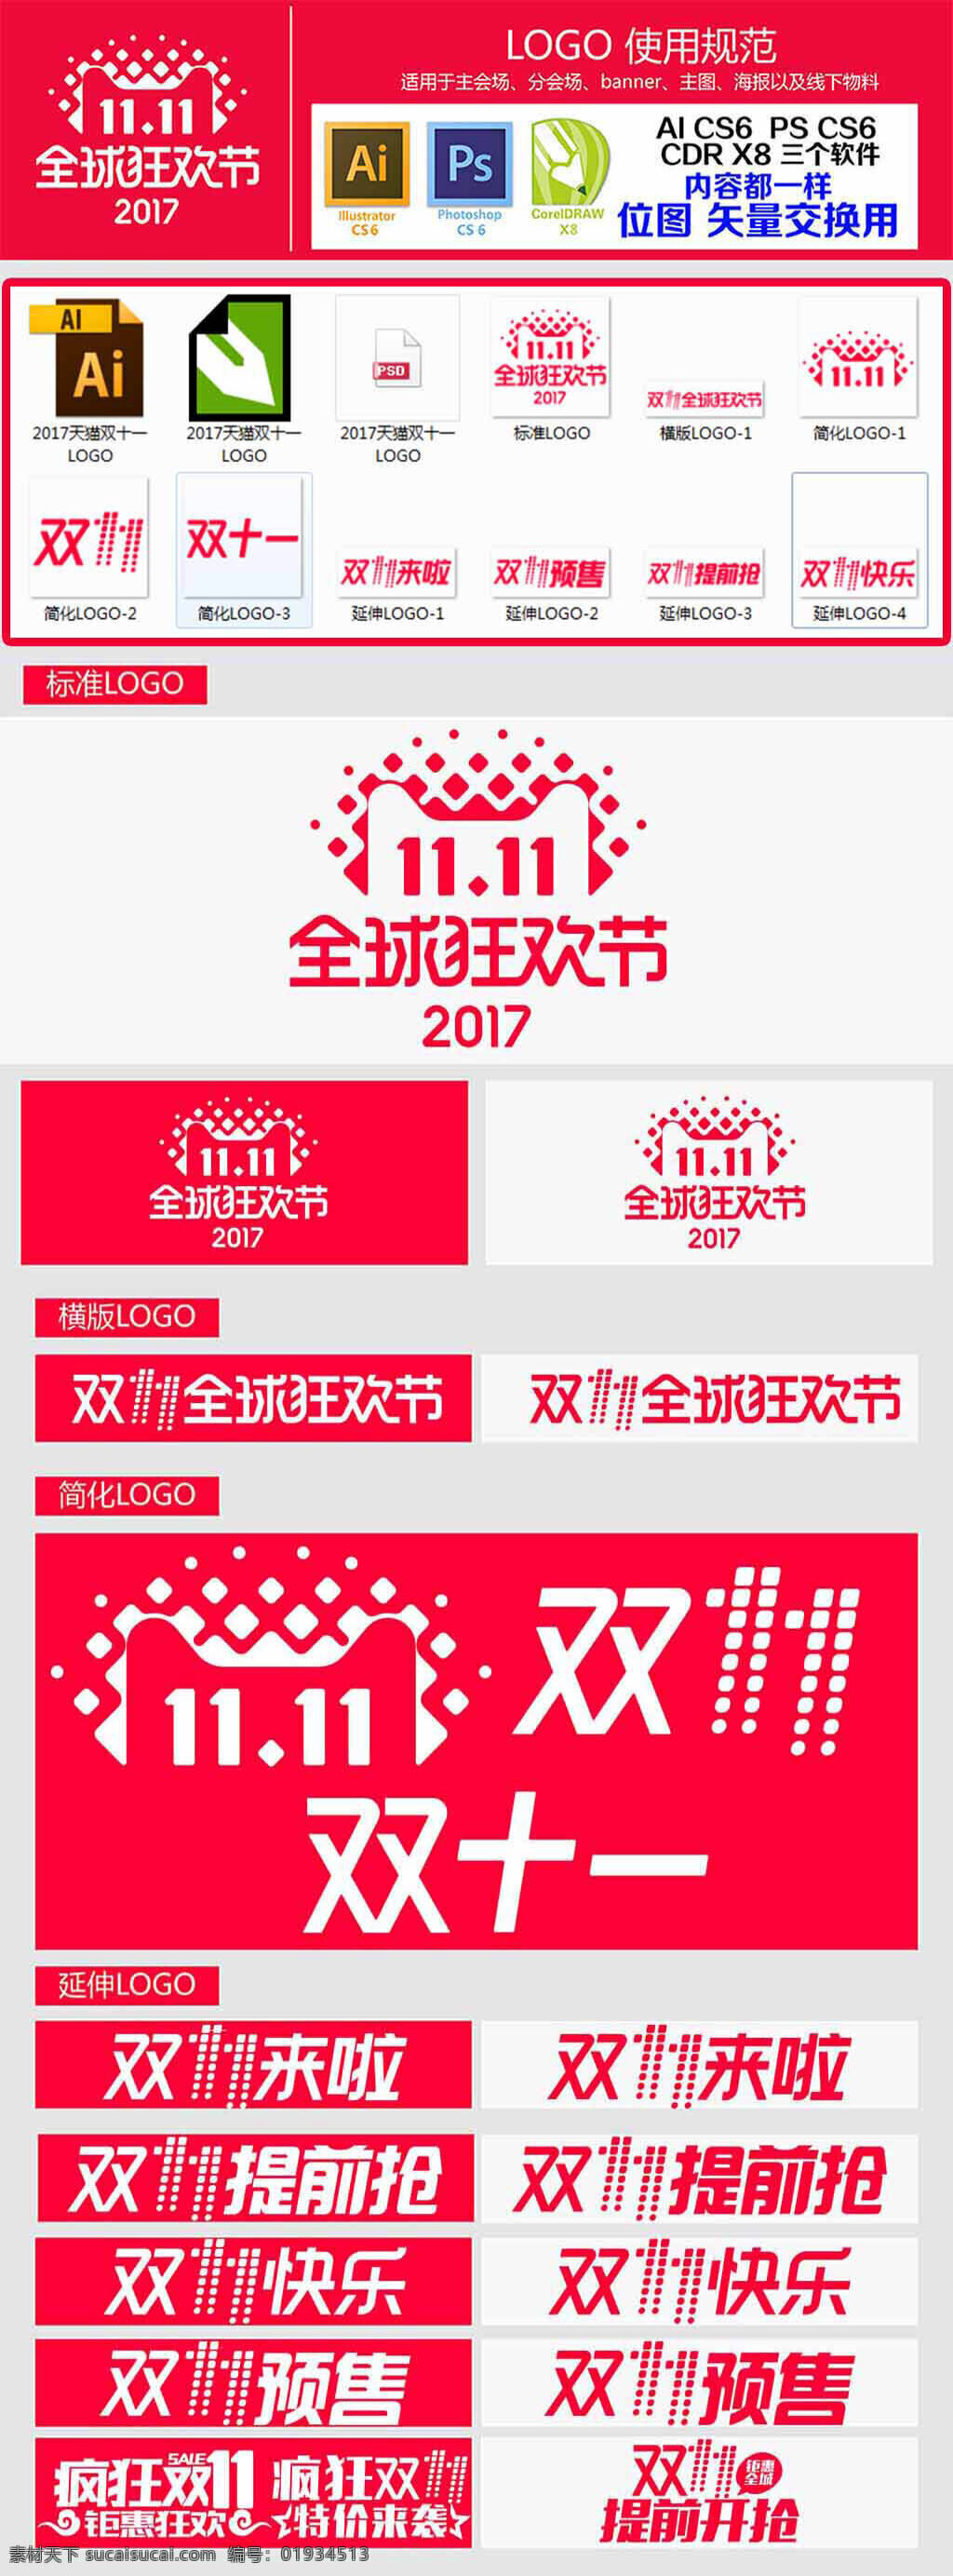 双十 全球 狂欢节 海报 logo 2017 天猫 双 双十一字体